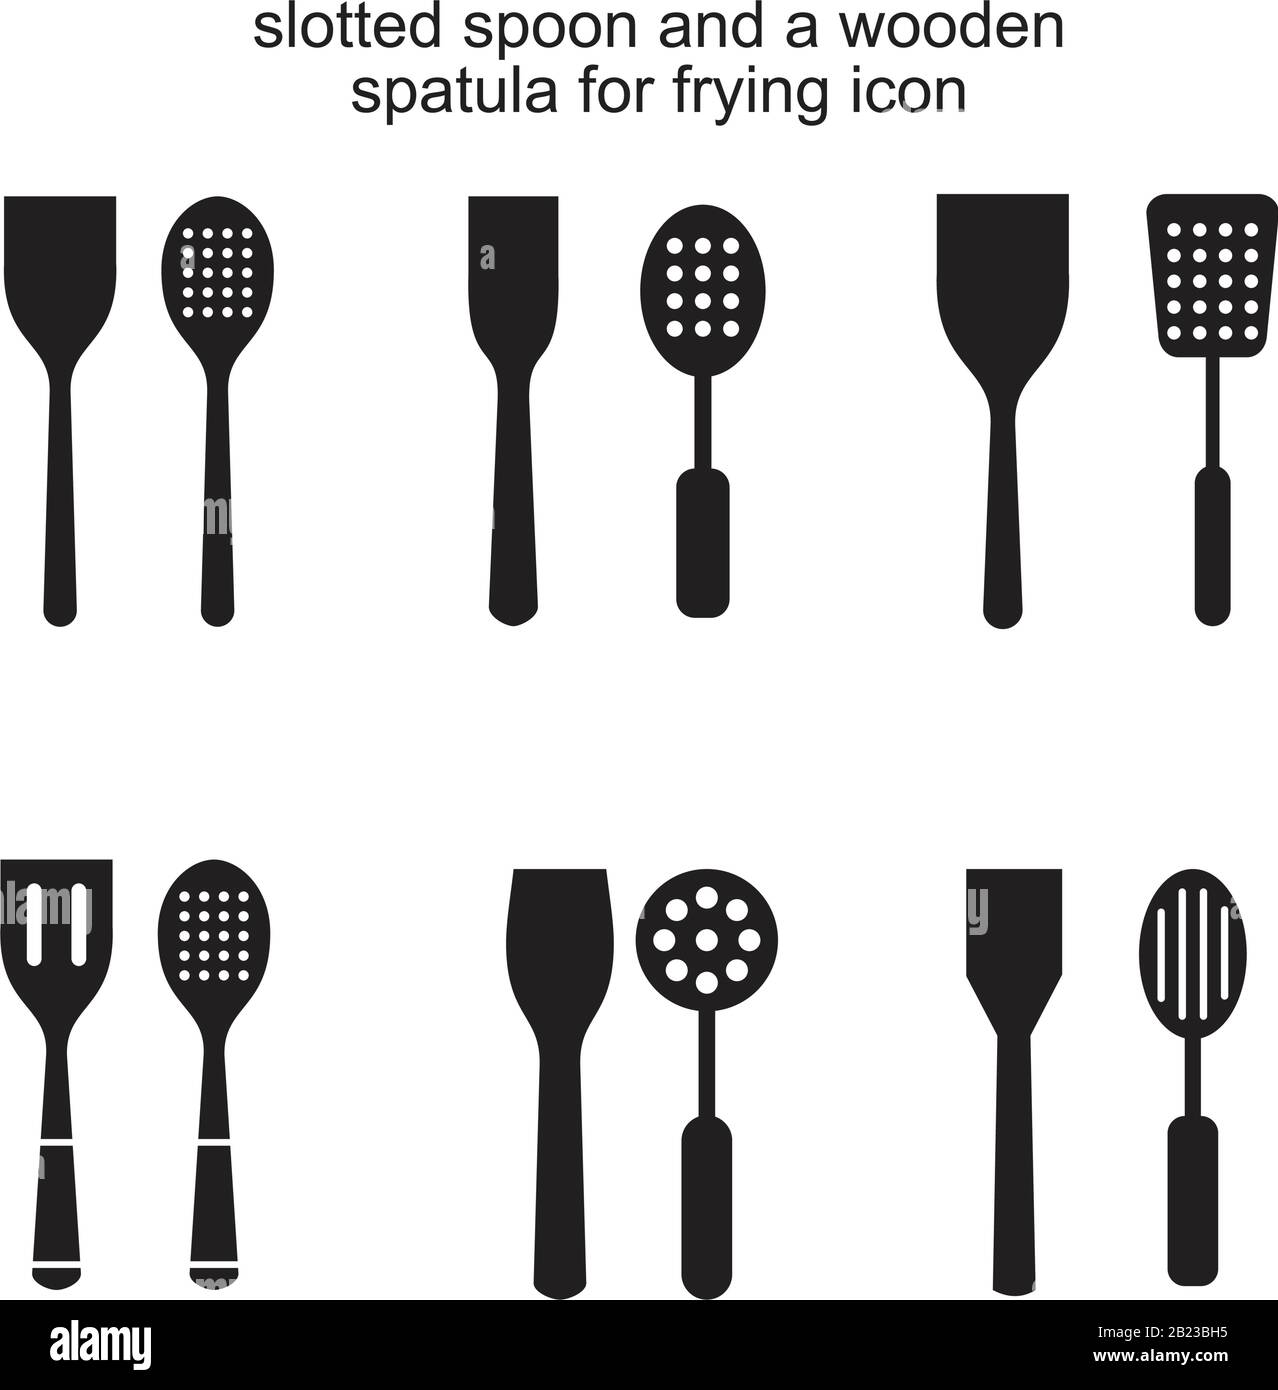 Cuillère fendue et spatule en bois pour modèle d'icône de friture noir  modifiable. Cuillère fendue et spatule en bois pour friture symbole icône  plat vecto Image Vectorielle Stock - Alamy